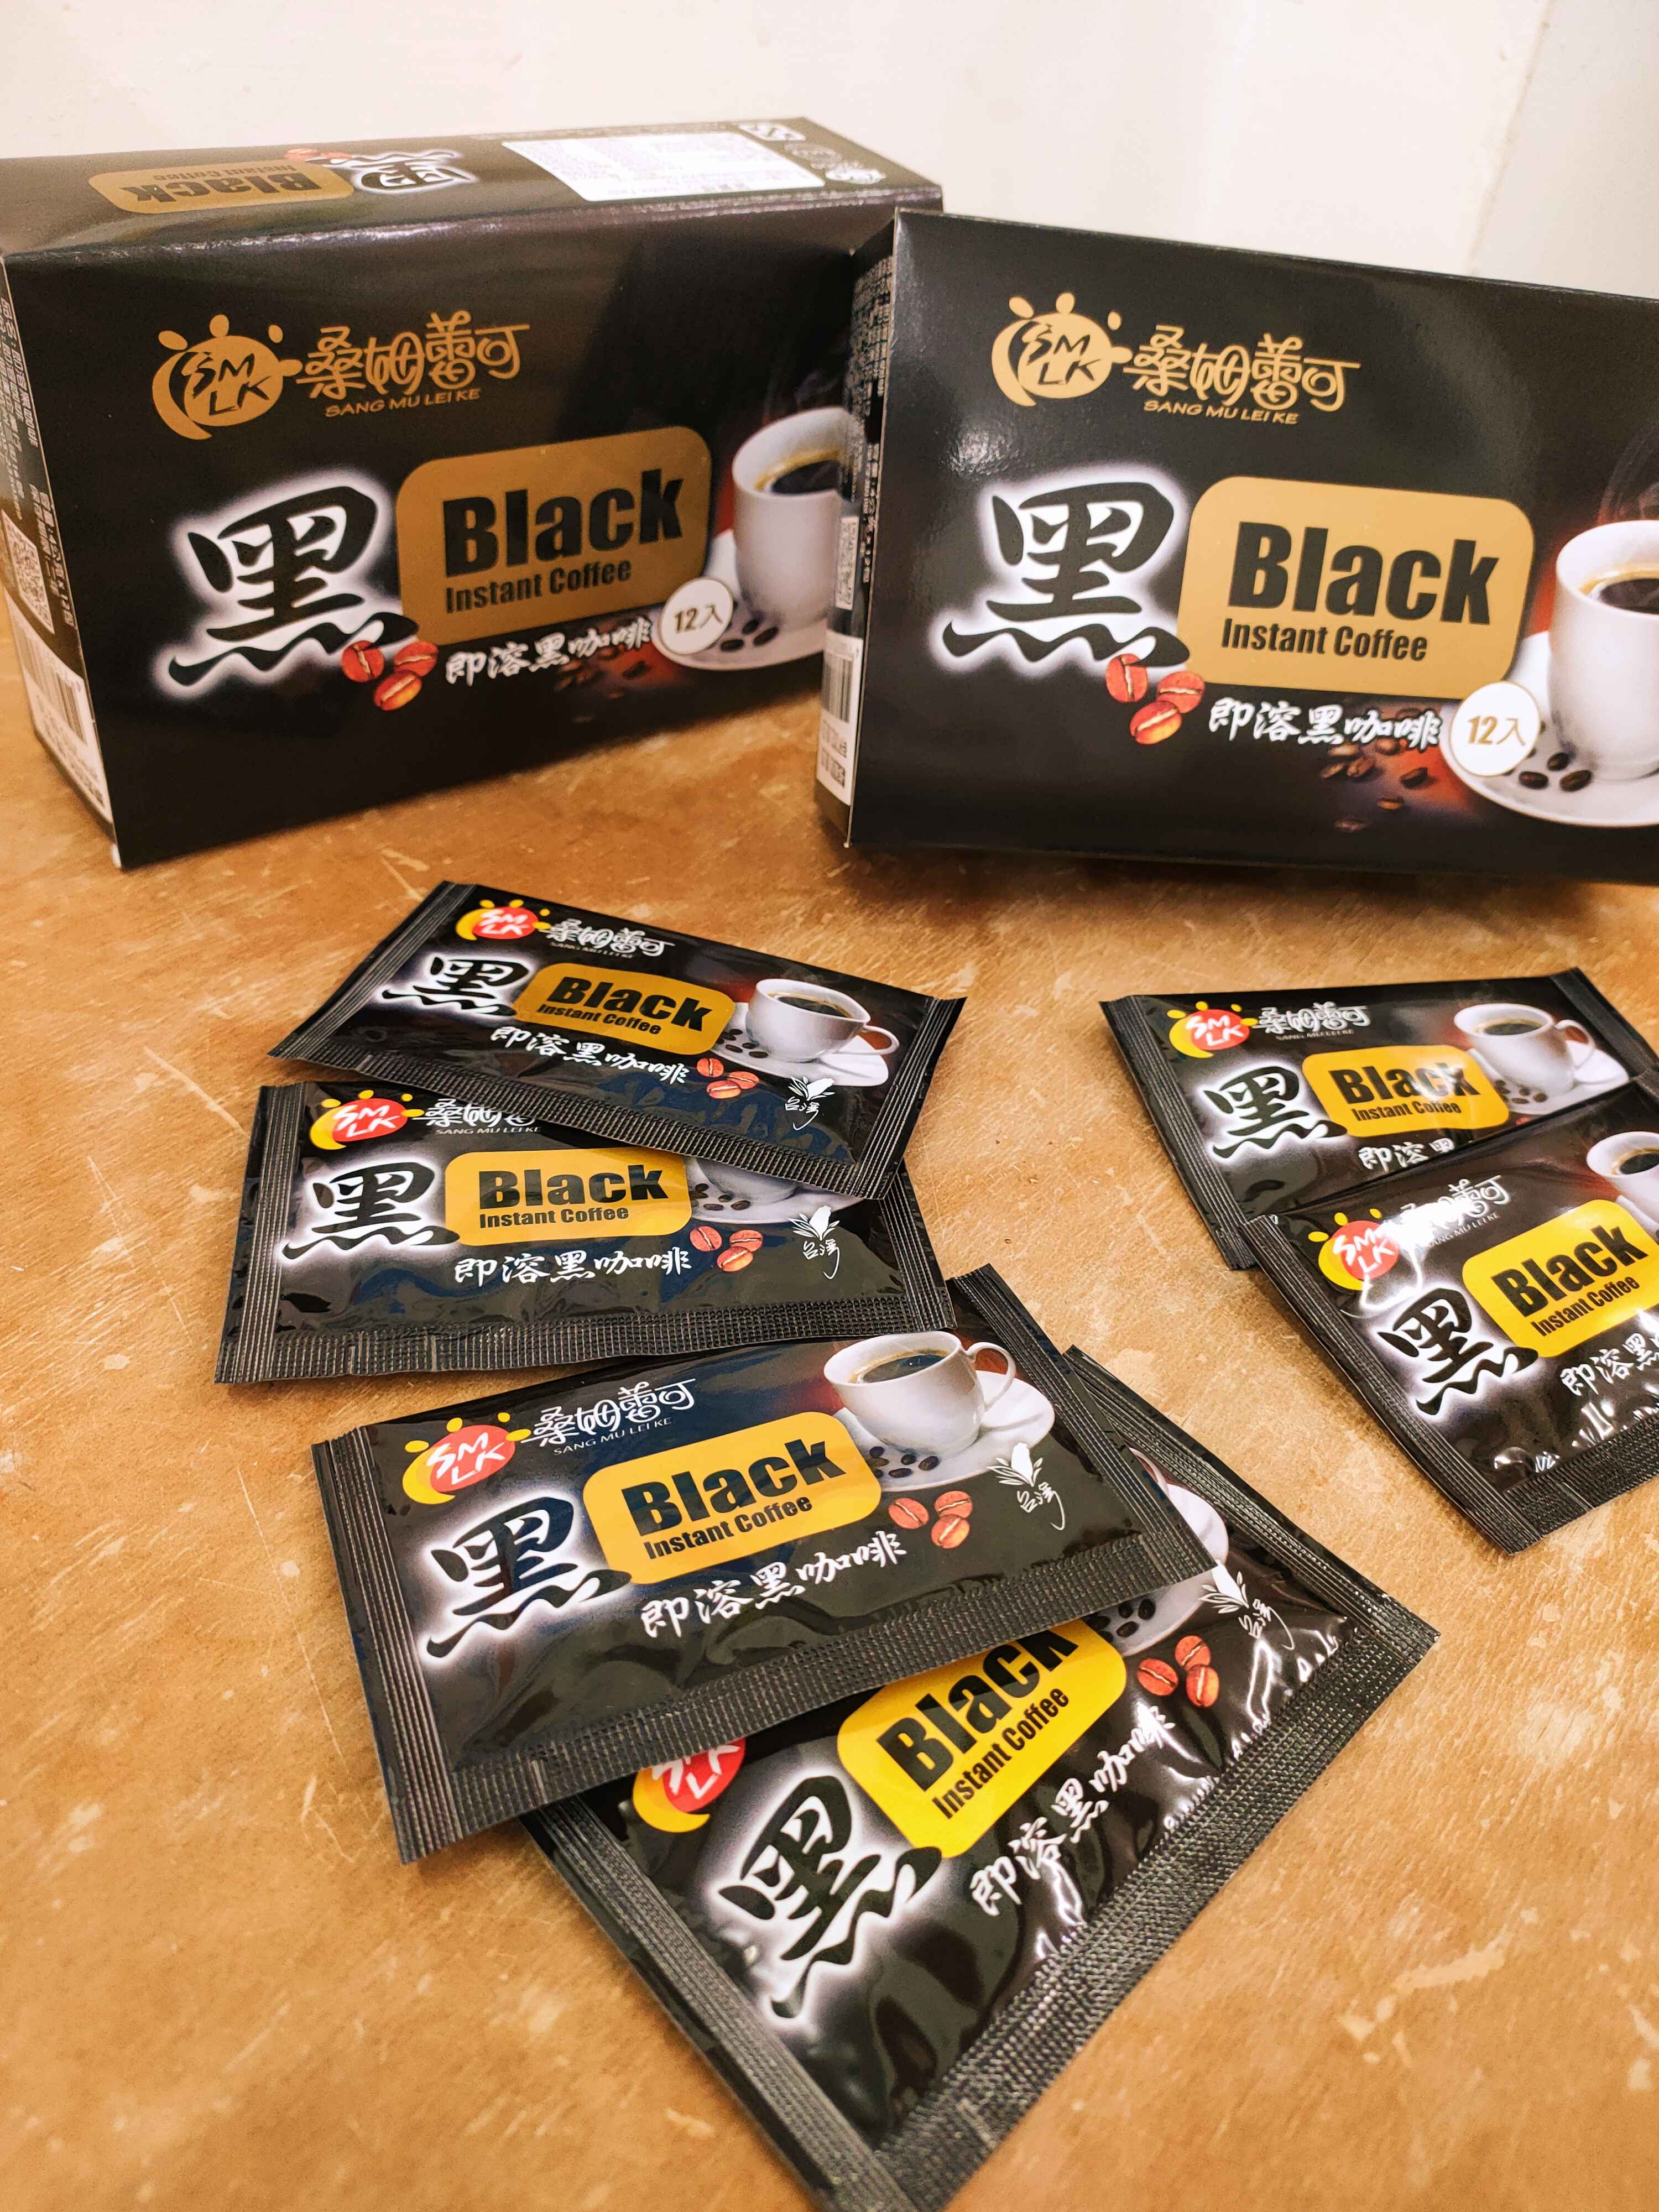 採用最新技術以冷凍乾燥法，萃取黑咖啡乾燥，保有「黑咖啡」的原味。
<br />隨時即可來杯香醇黑咖啡。